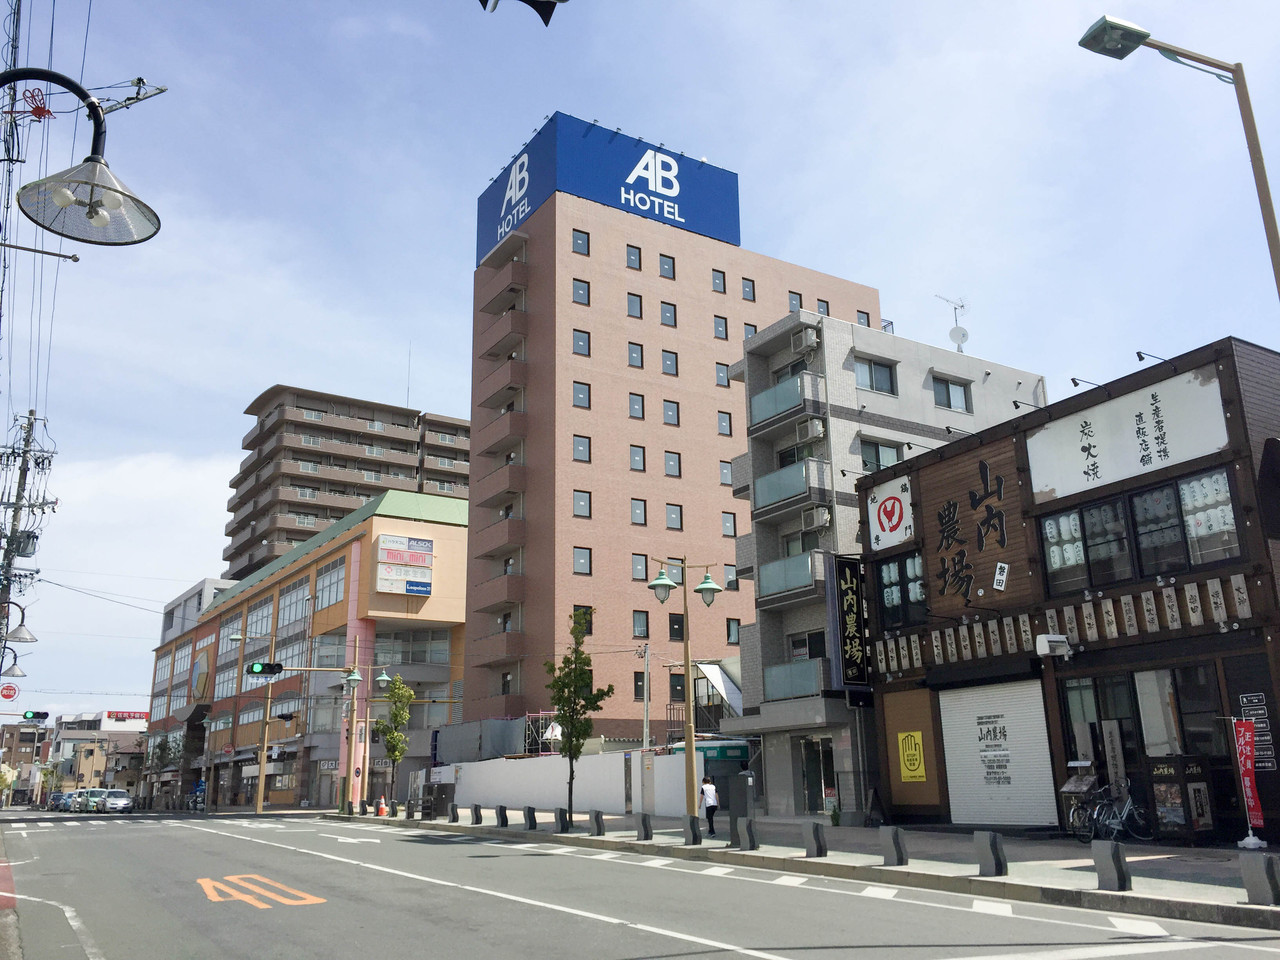 続報 完成まであと少し 磐田駅前のabホテルが大分できあがってる 予定通りなら17年5月中のオープン 磐田市中泉 浜松つーしん